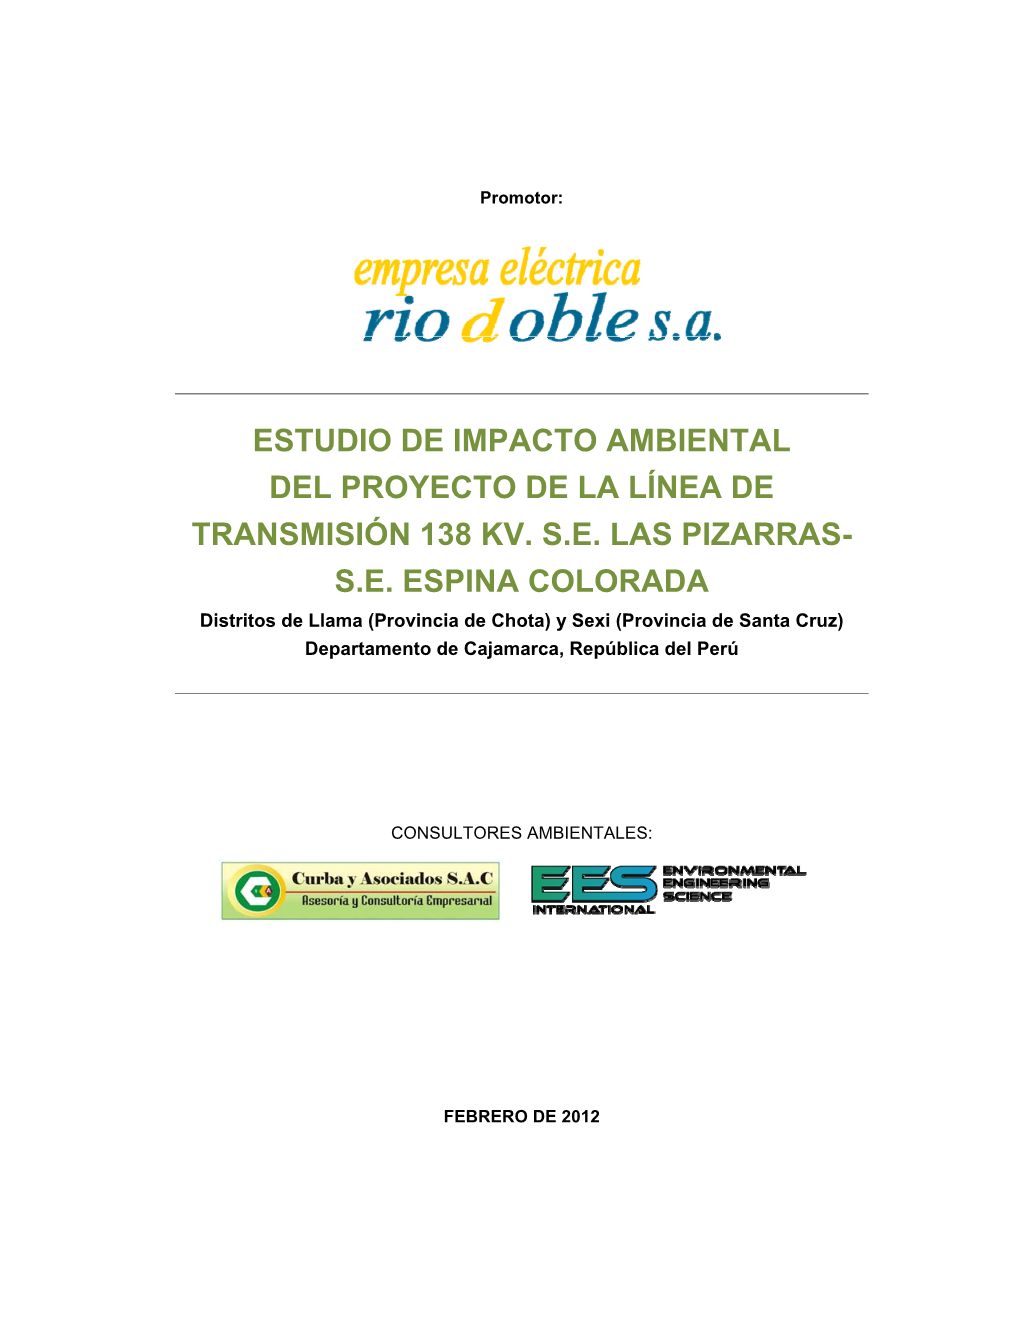 Estudio De Impacto Ambiental Del Proyecto De La Línea De Transmisión 138 Kv